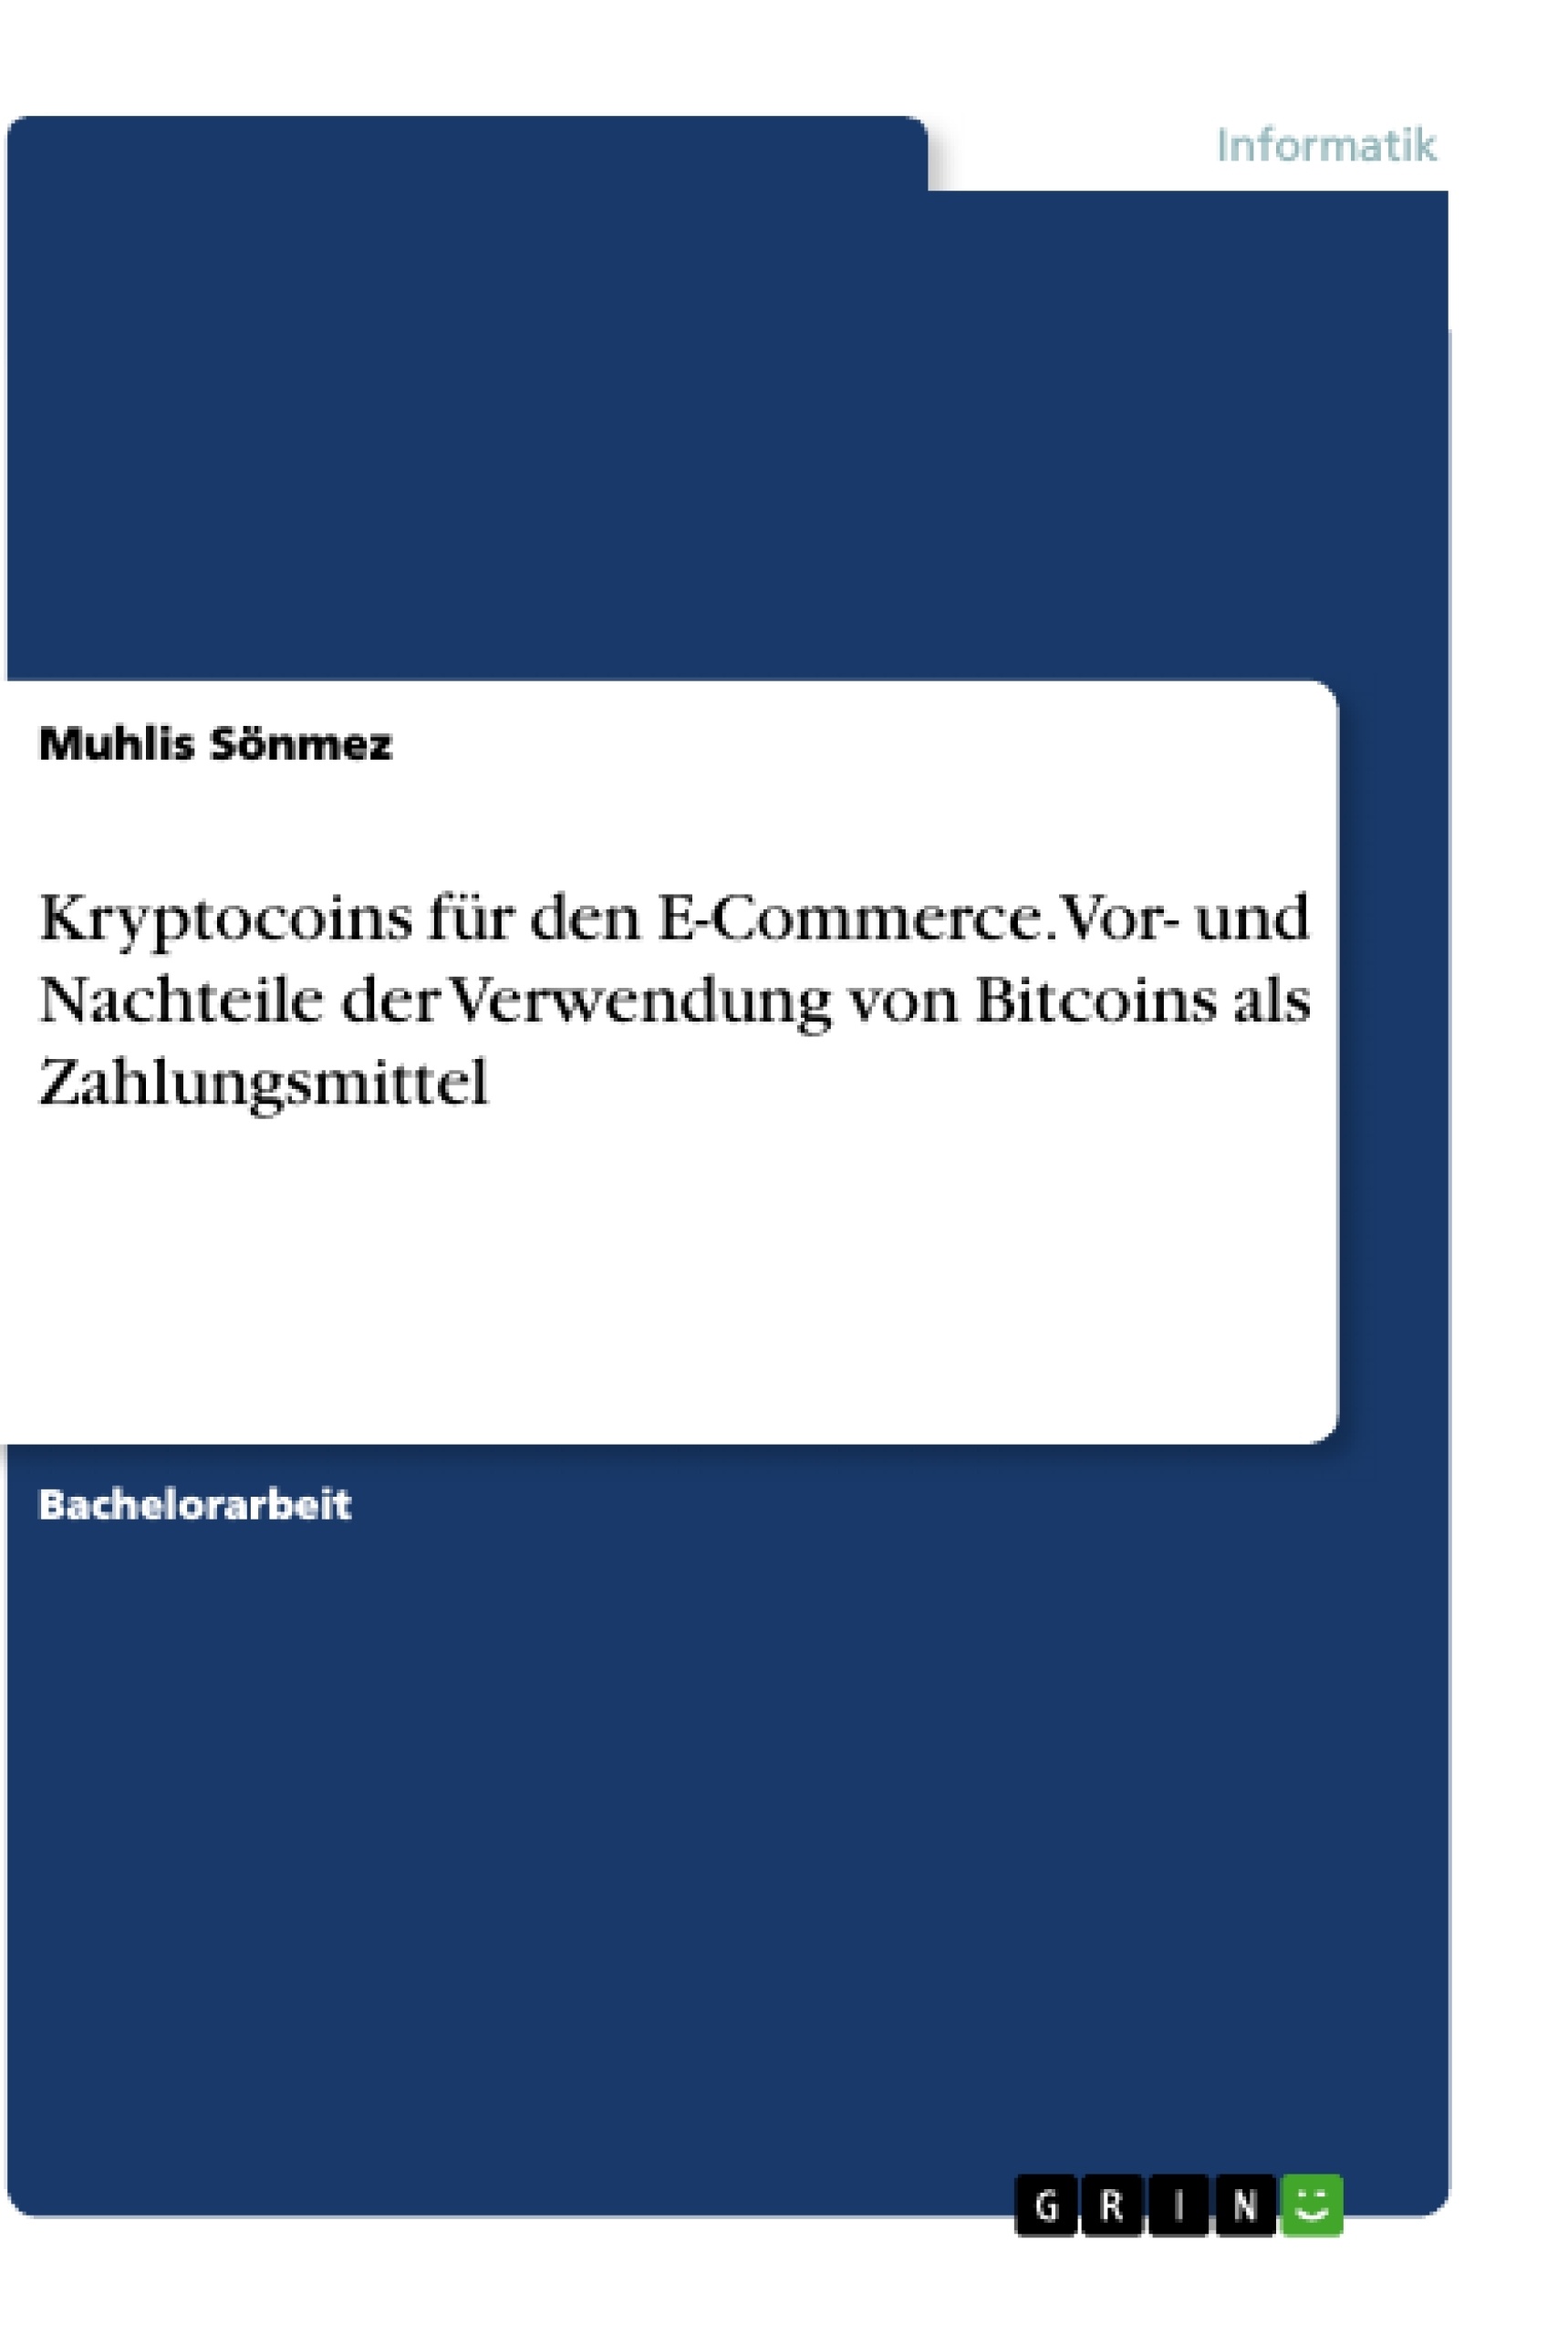 Título: Kryptocoins für den E-Commerce. Vor- und Nachteile der Verwendung von Bitcoins als Zahlungsmittel